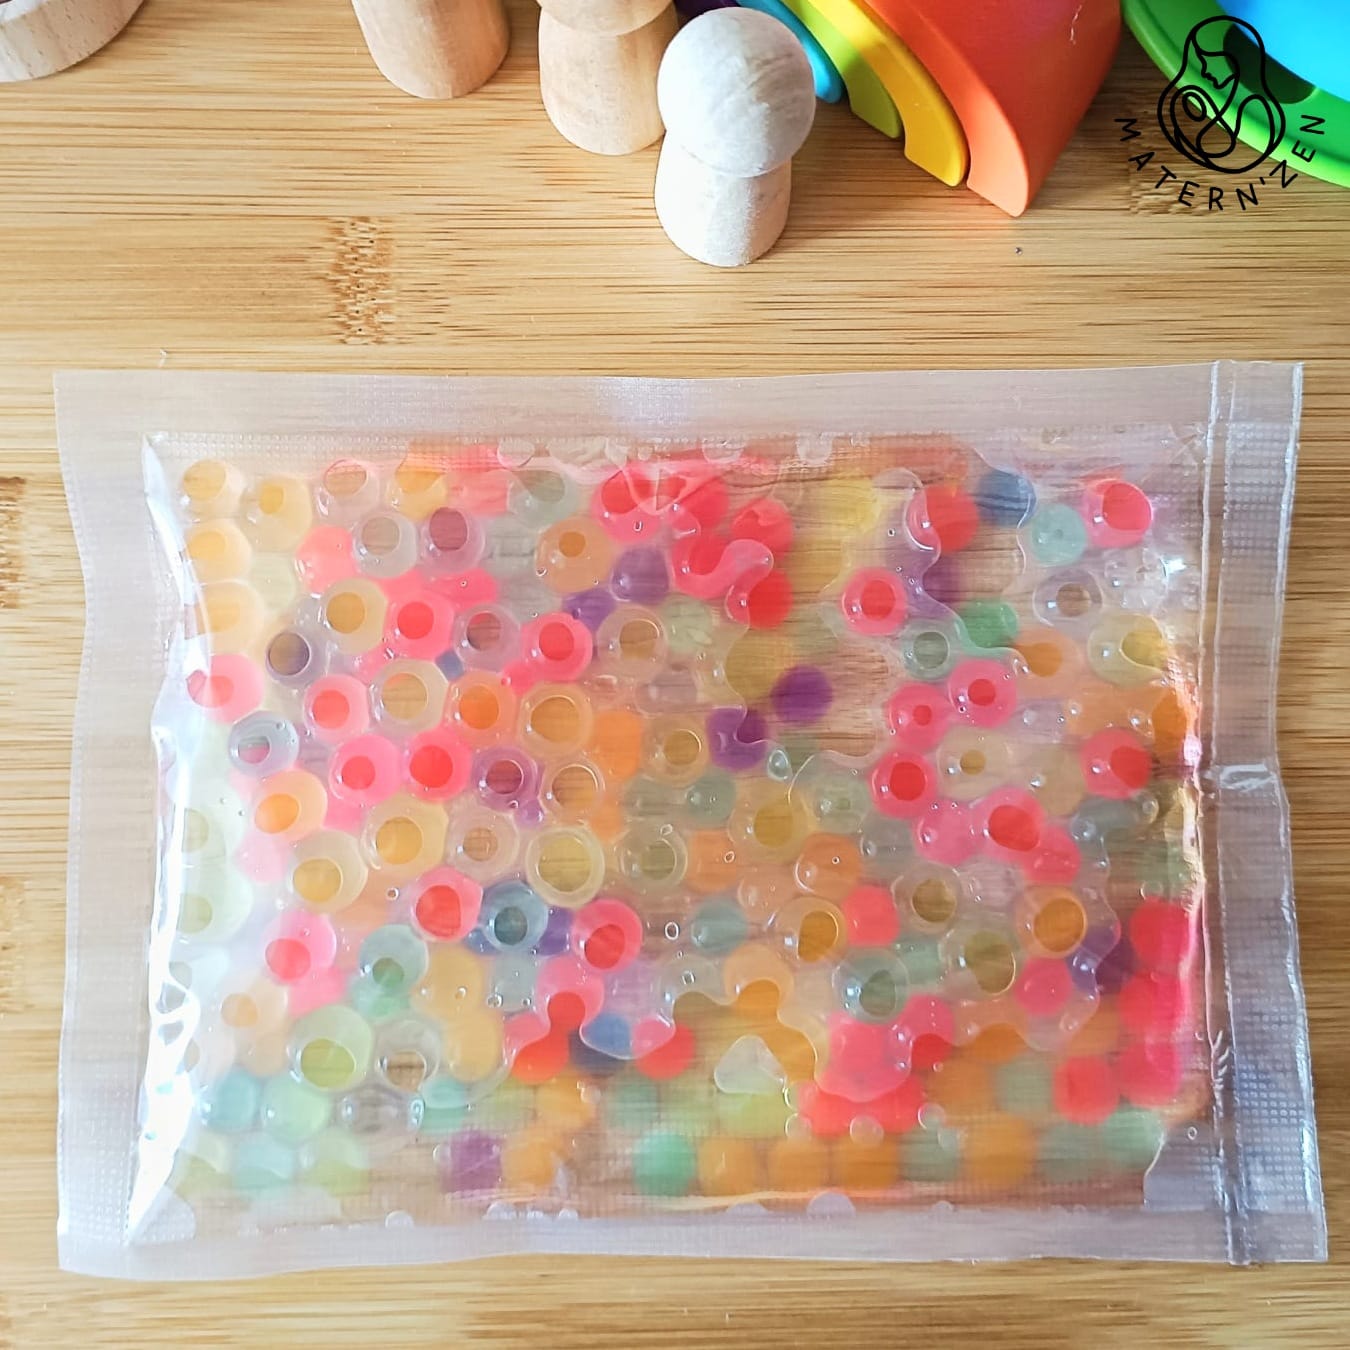 Liquid Sensory Bag Orbeez Rainbow Water Beads – Maternzen